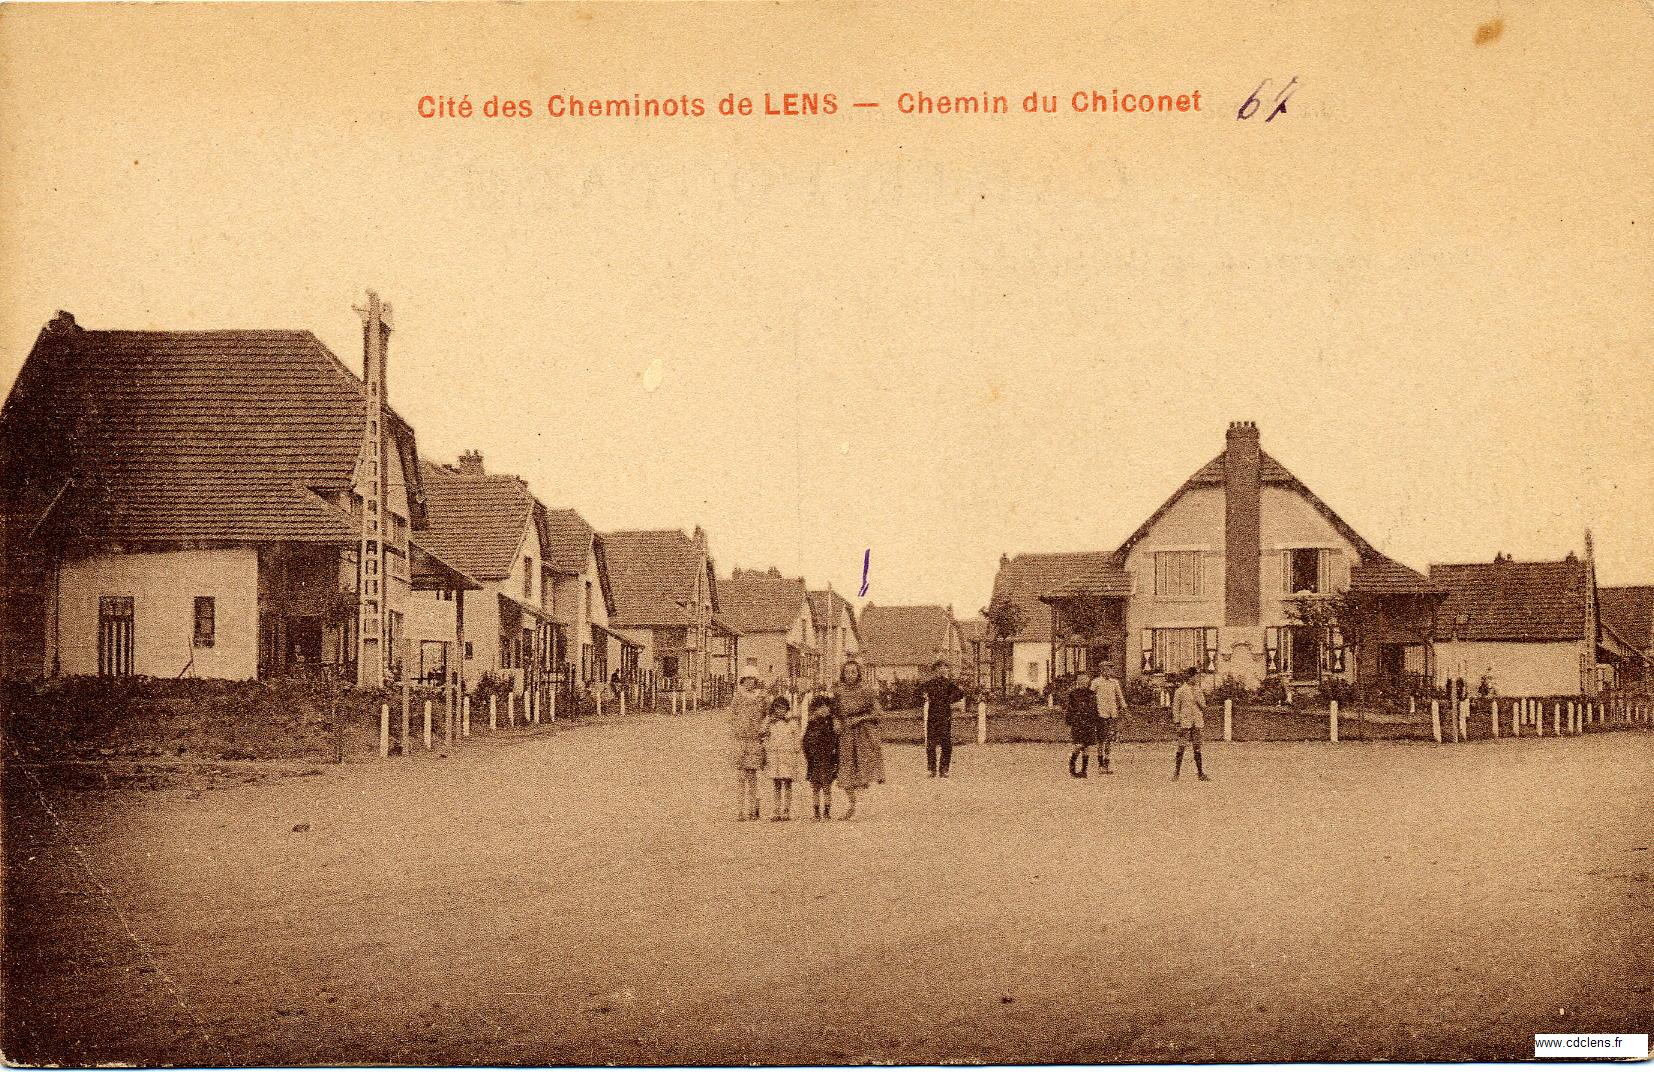 Chemin du Chiconet